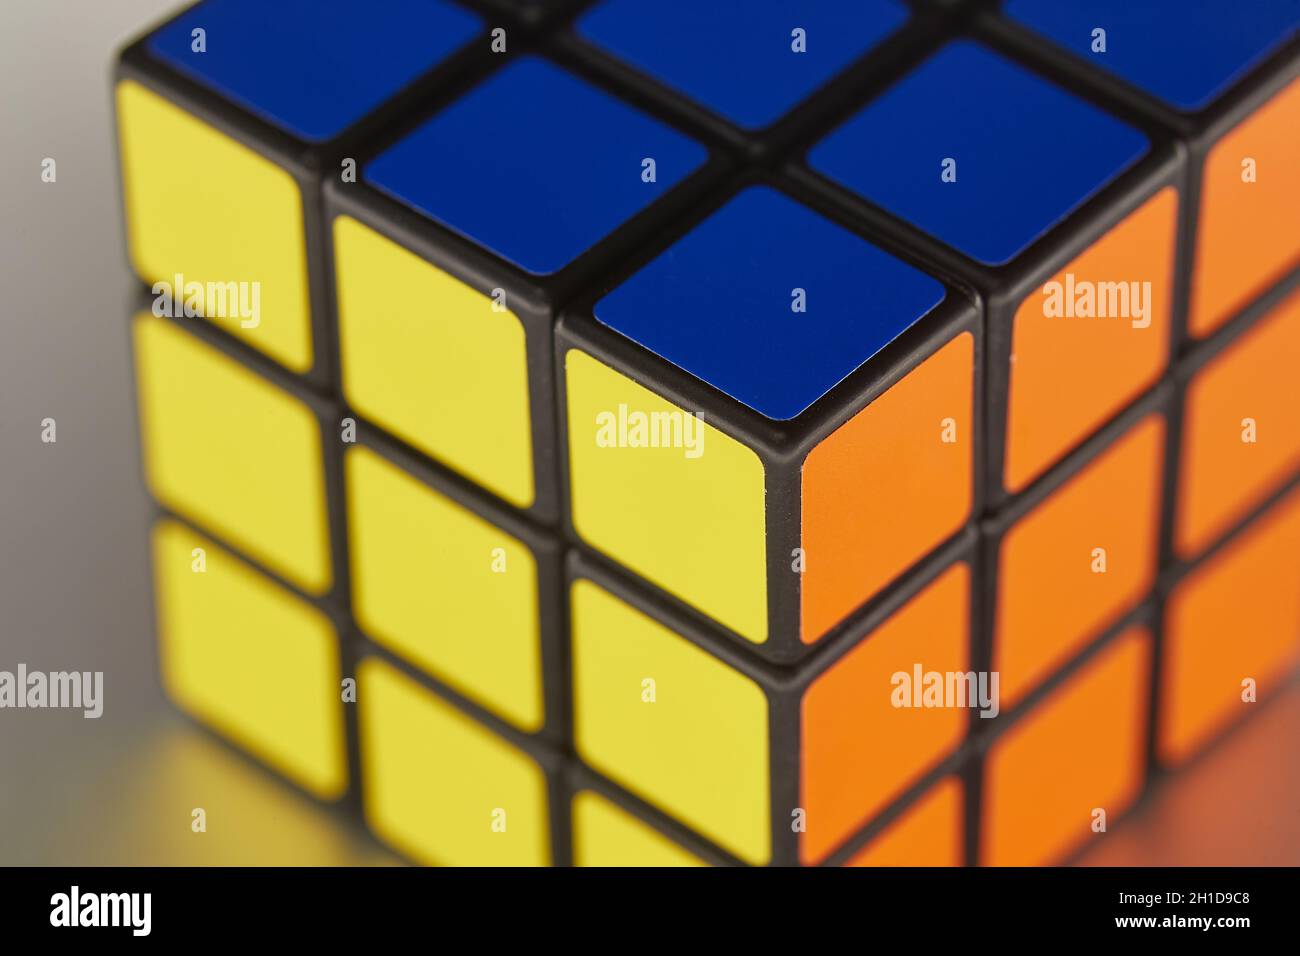 BUDAPEST, UNGARN - UM 2019: Gelöst Rubik's Würfel Logik Spiel auf glänzende Metalloberfläche gleichmäßig von allen Seiten beleuchtet Stockfoto